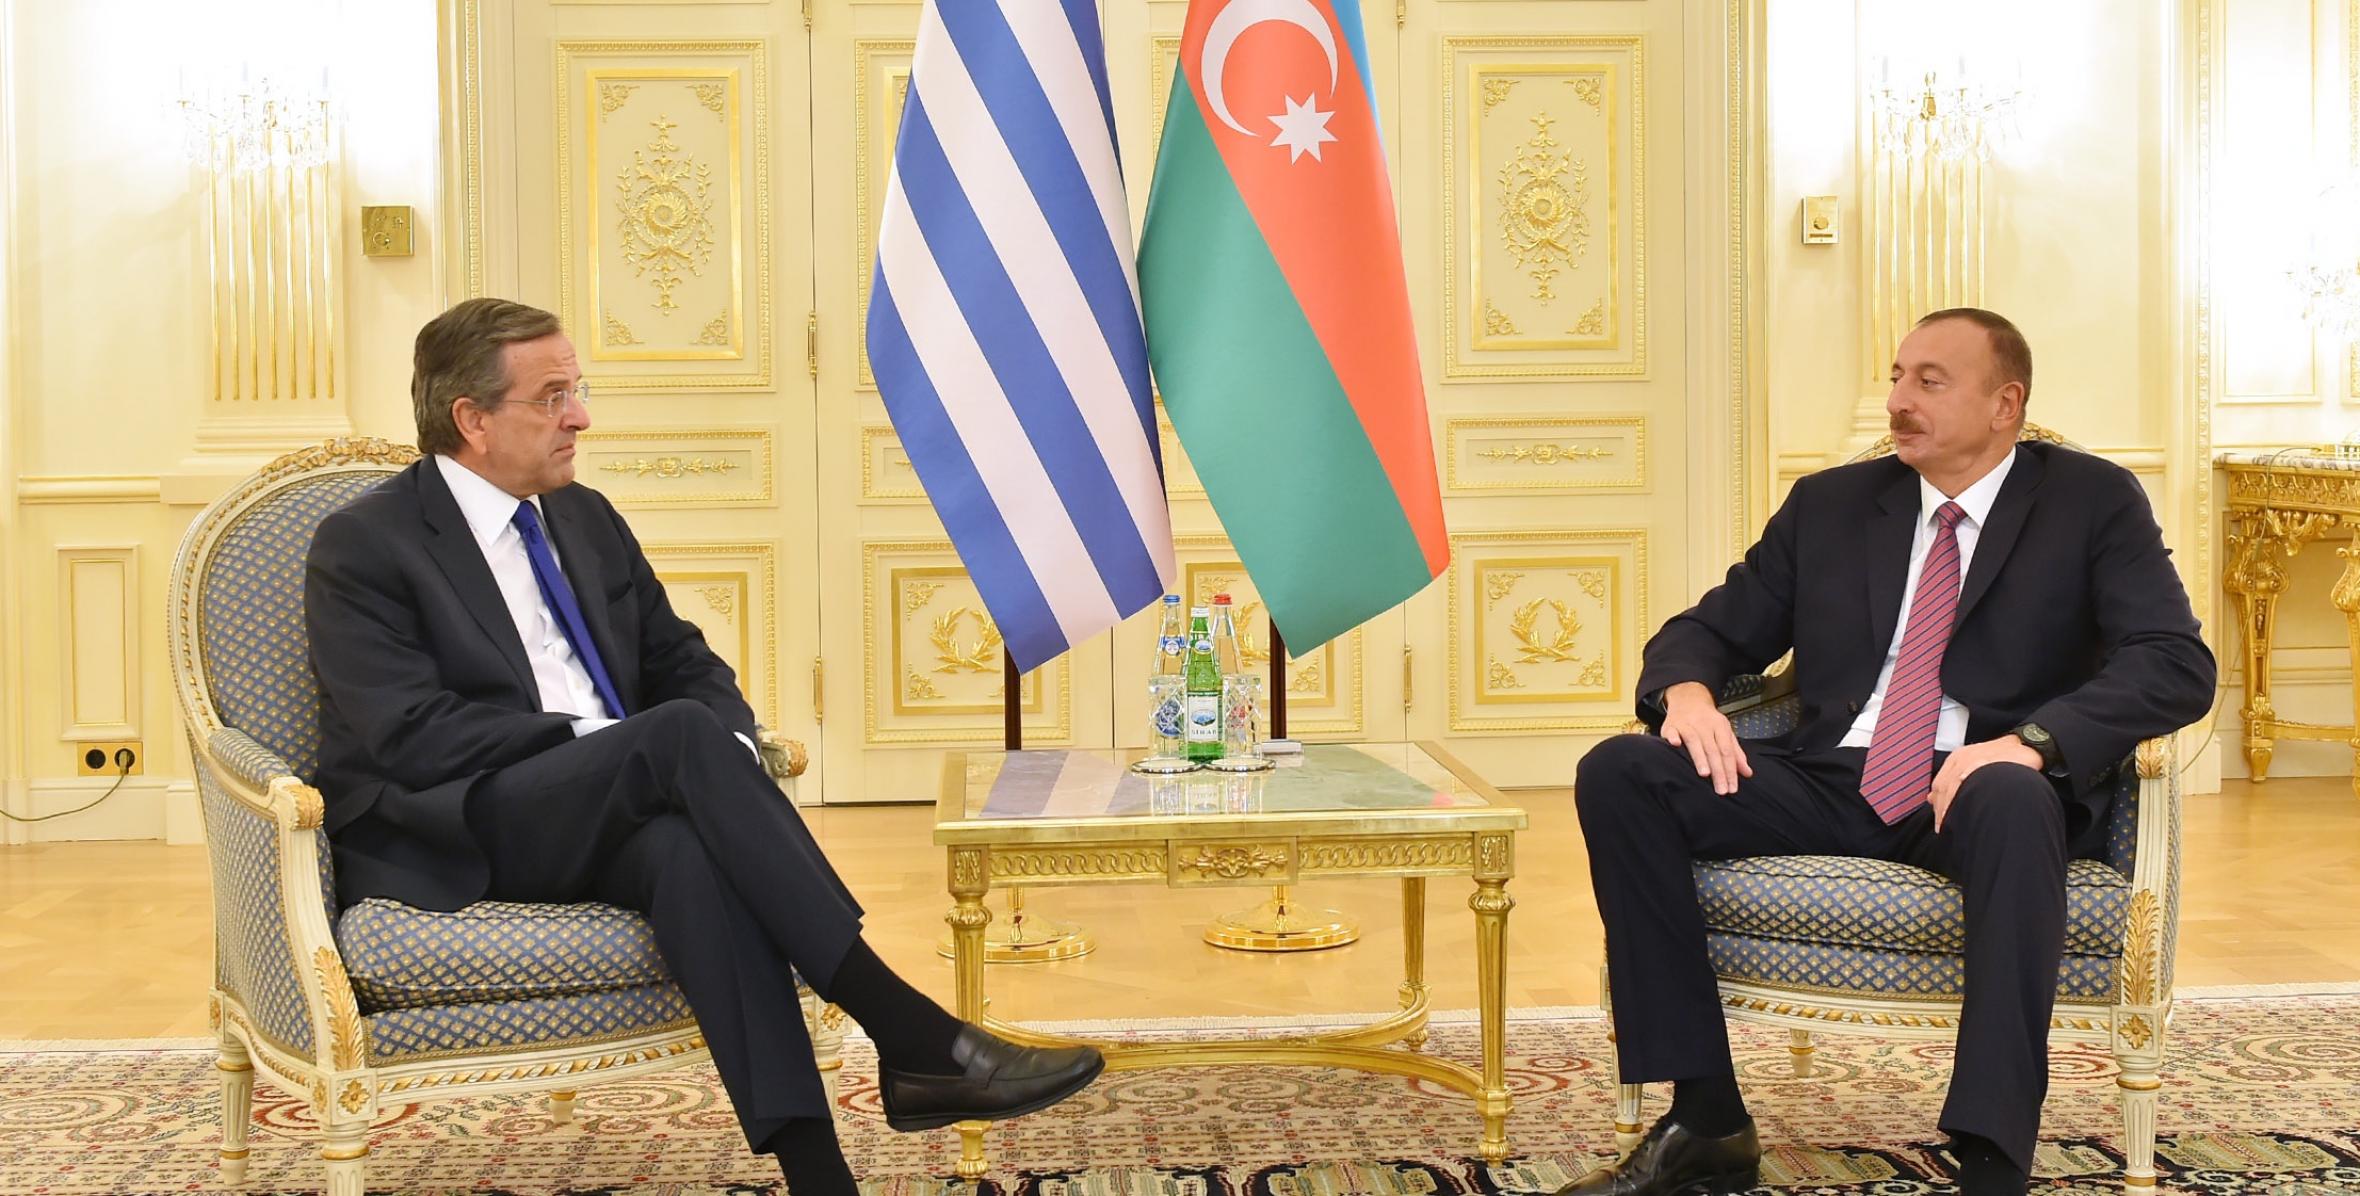 Состоялась встреча Ильхама Алиева с премьер-министром Греческой Республики Антонисом Самарасом один на один